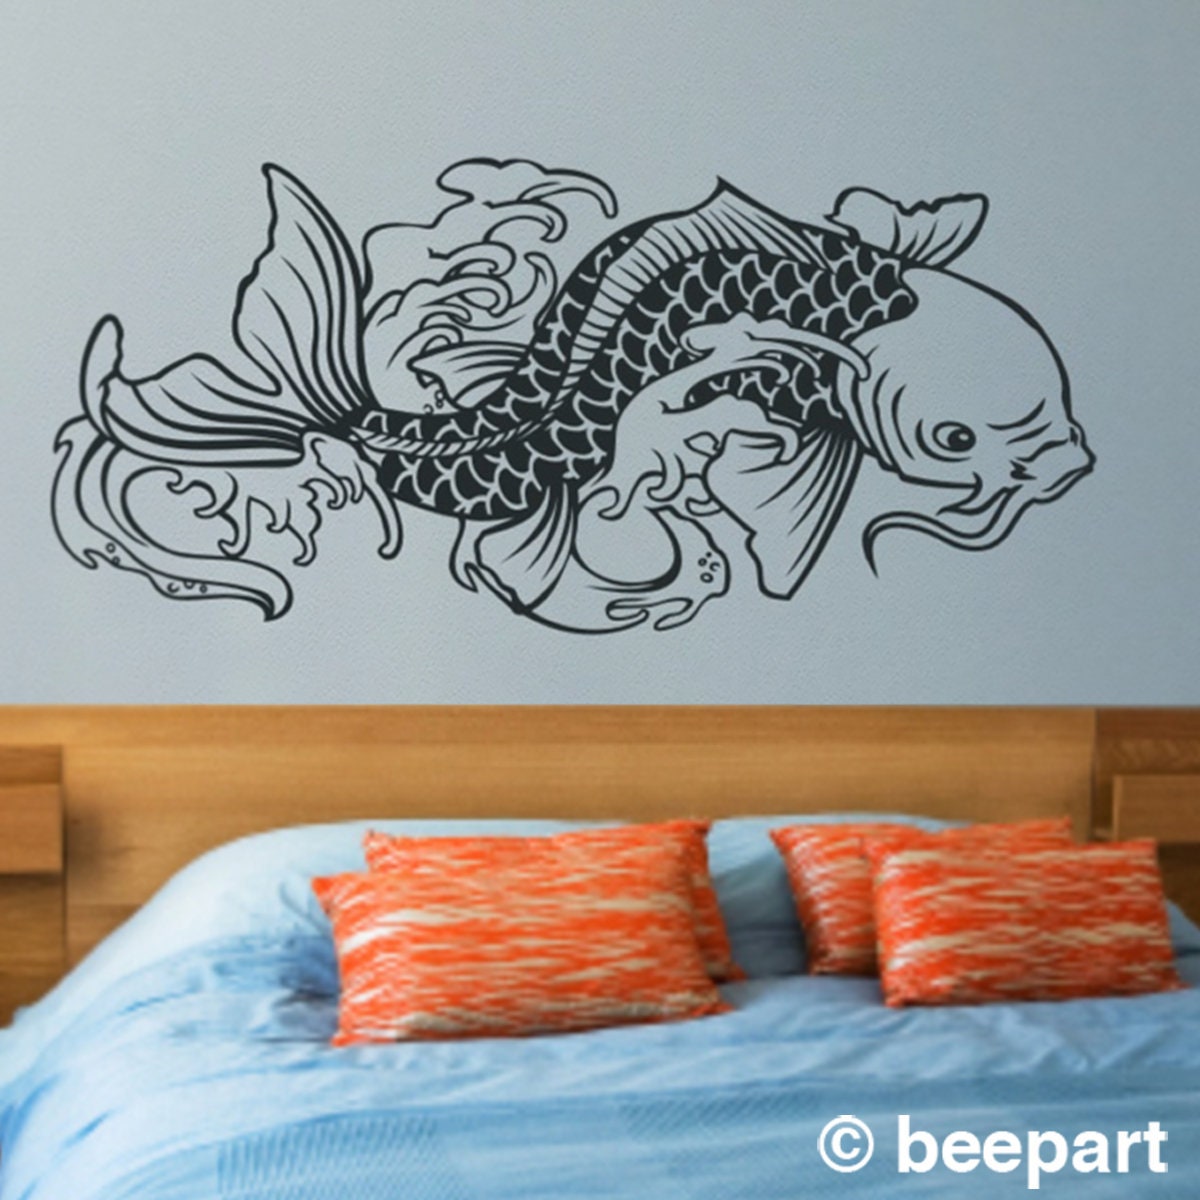 Stunning Koi Carp Fish Modern Wall Art Decal Sticker A48 